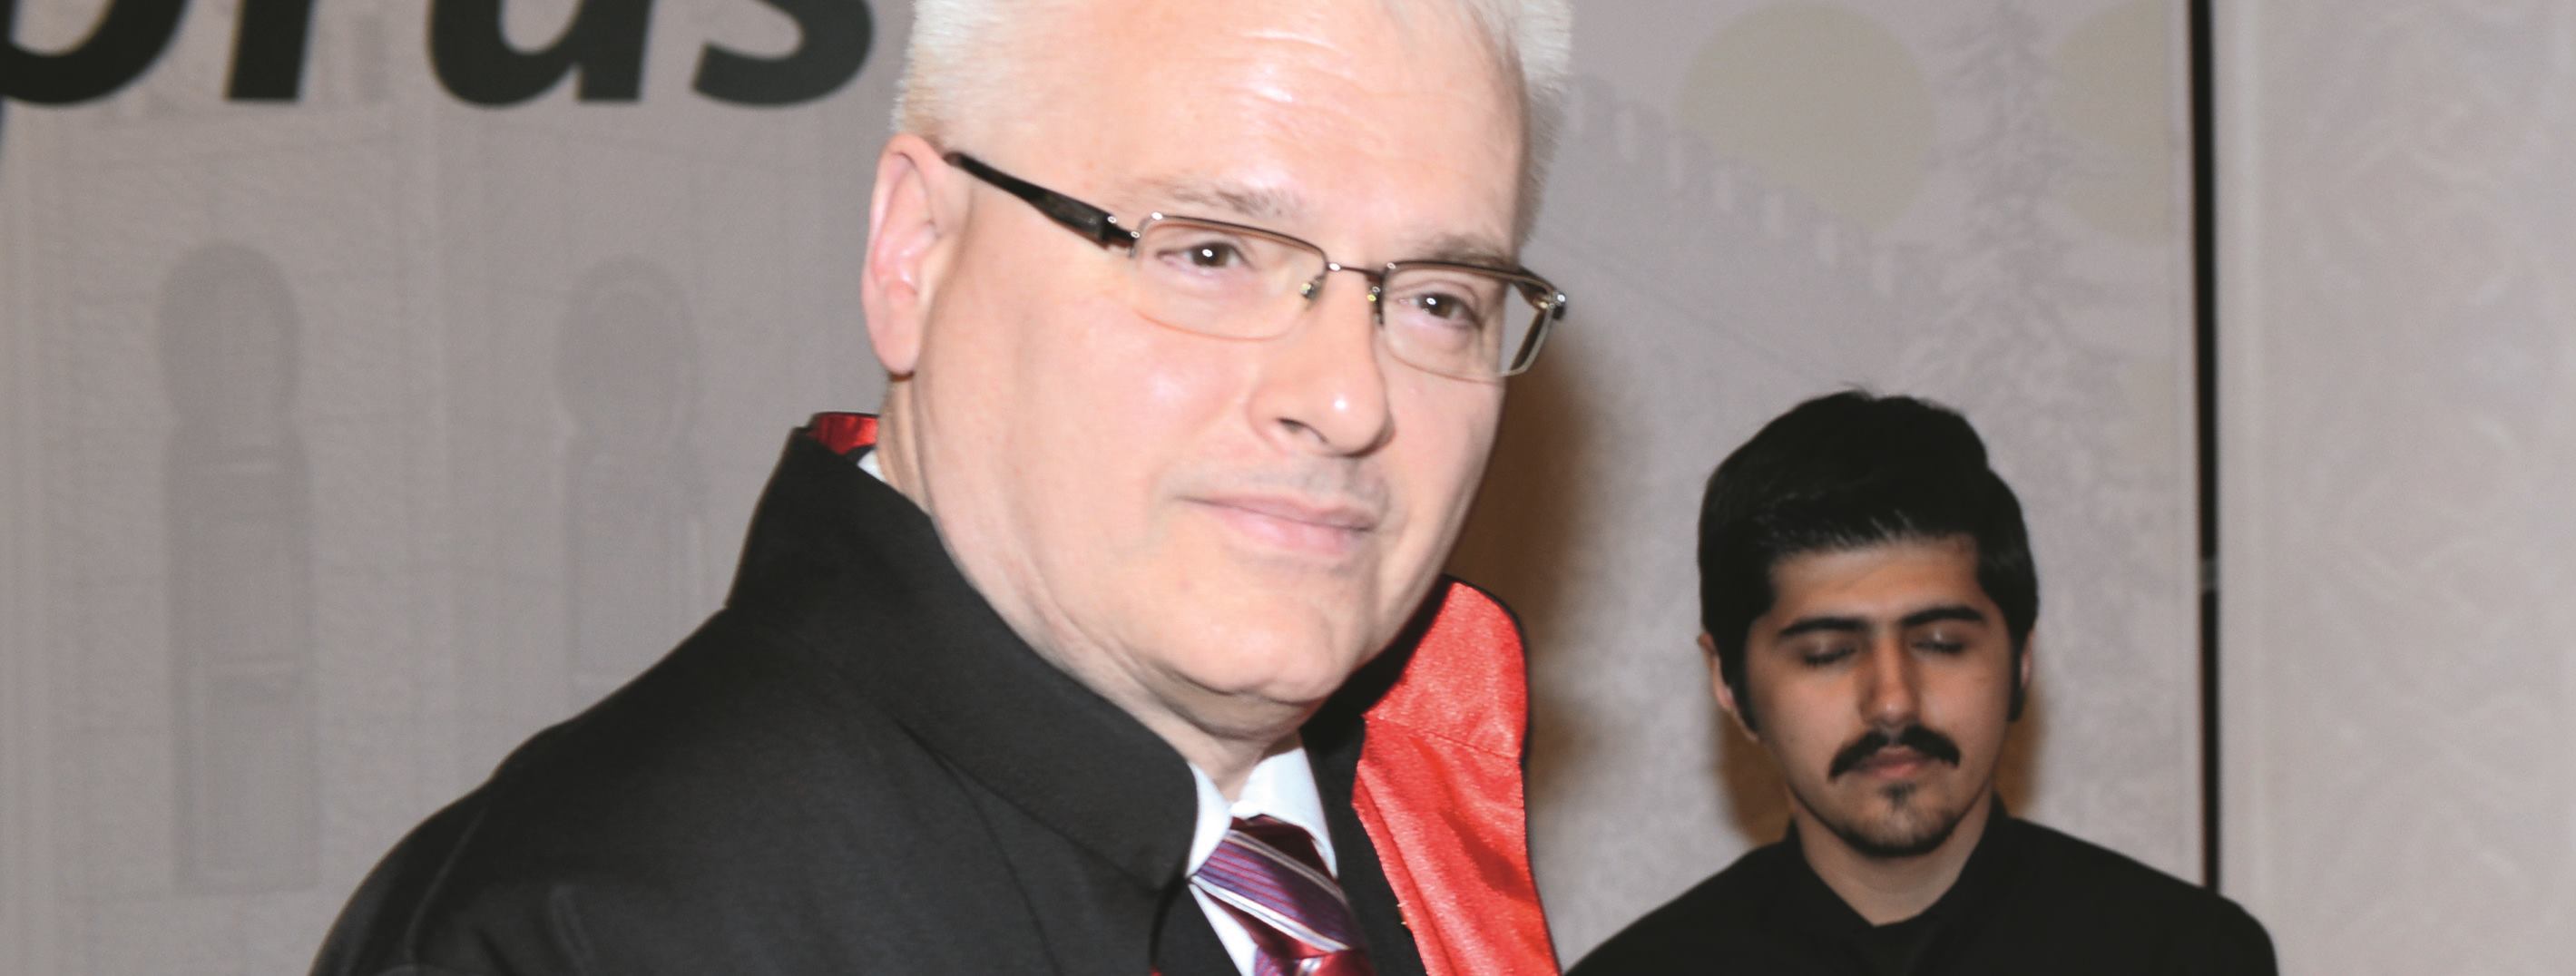 Josipoviću počasni doktorat za doprinos pravu i društvu